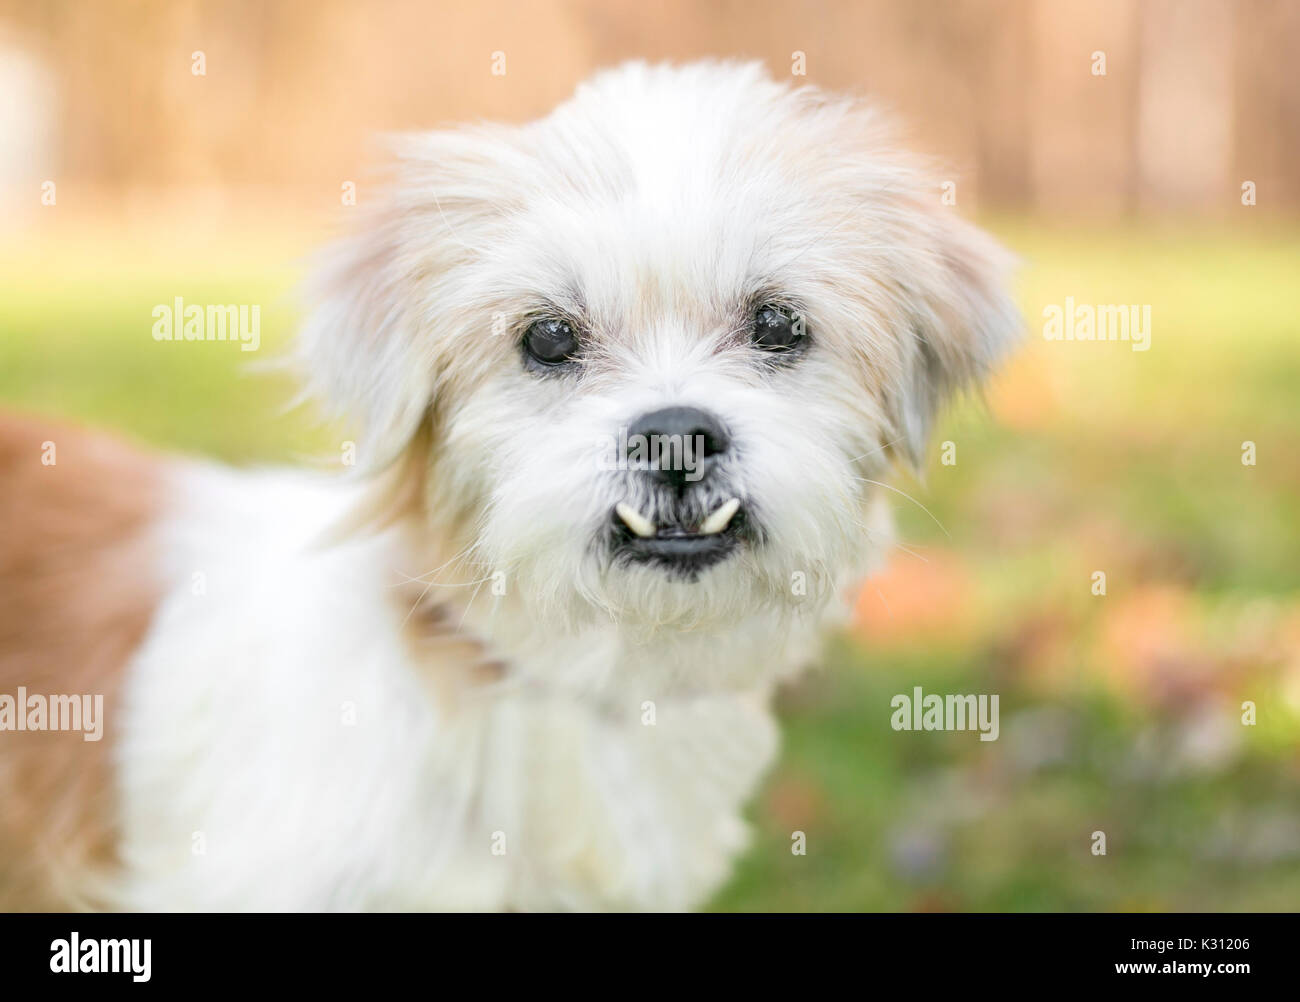 Einen kleinen schäbigen gemischte Rasse Hund mit einem unterbiss  (malokklusion Stockfotografie - Alamy